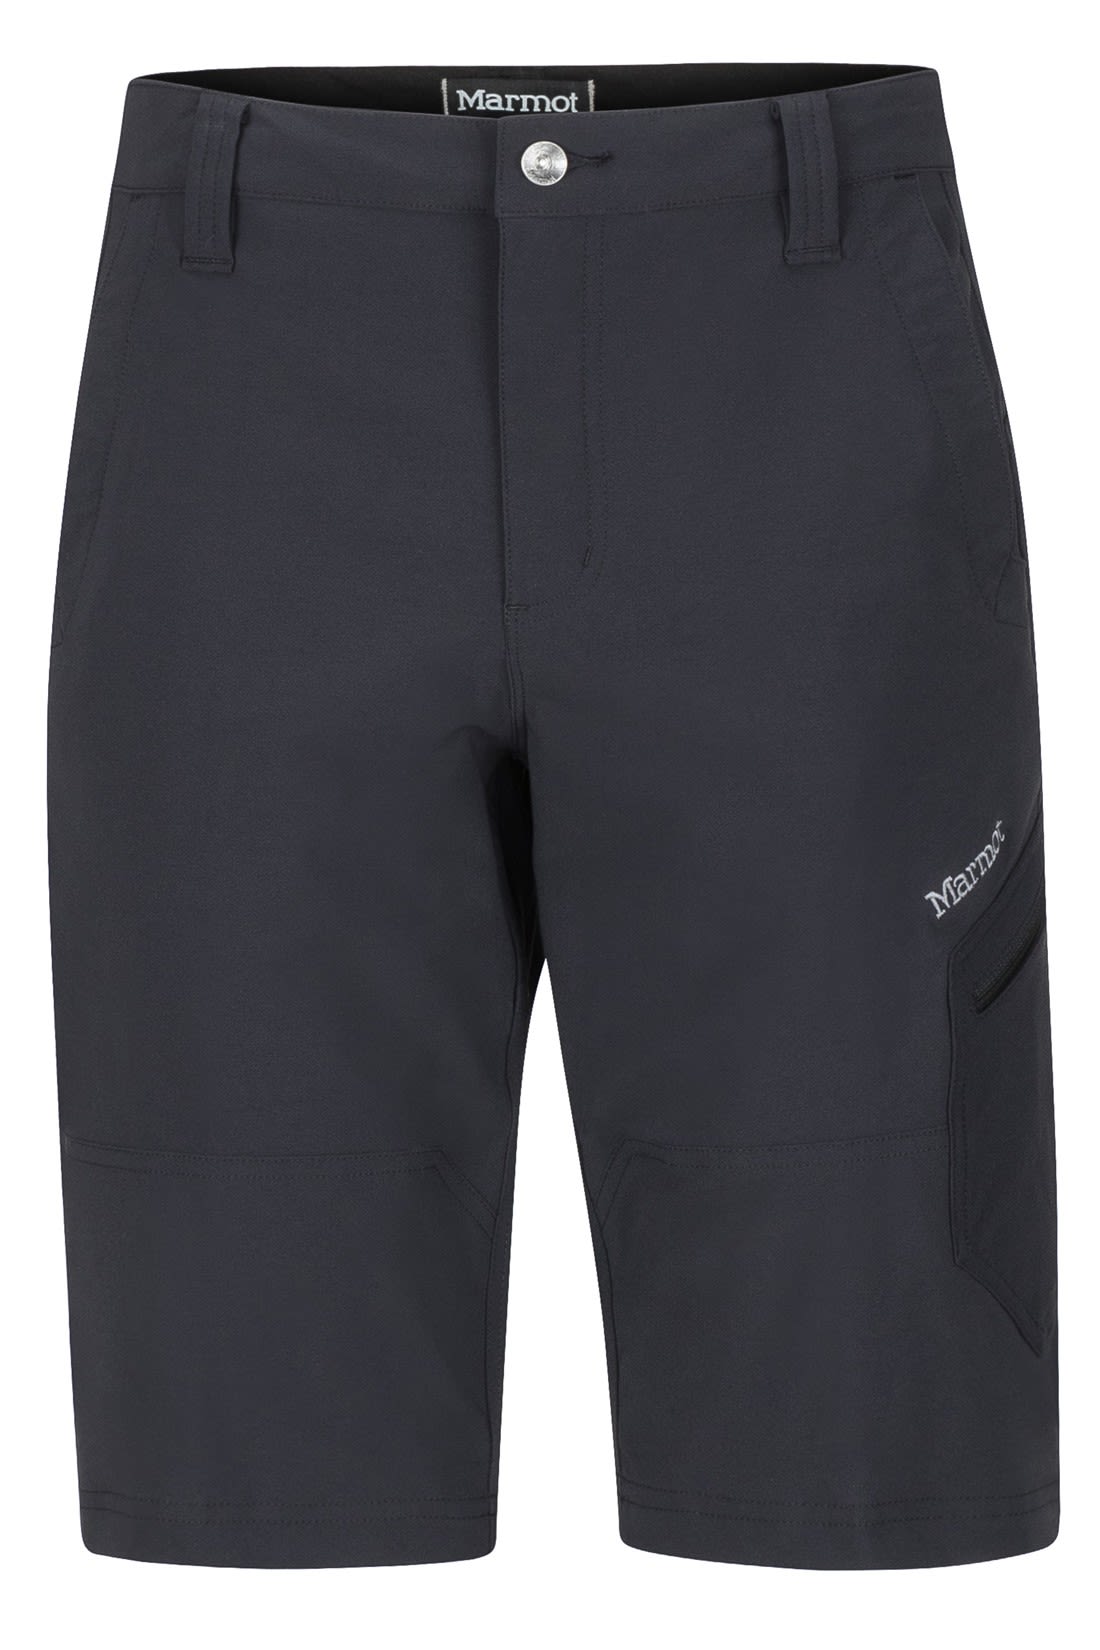 Marmot Limantour Short Schwarz- Male Shorts- Grsse 40 - Farbe Black unter Marmot